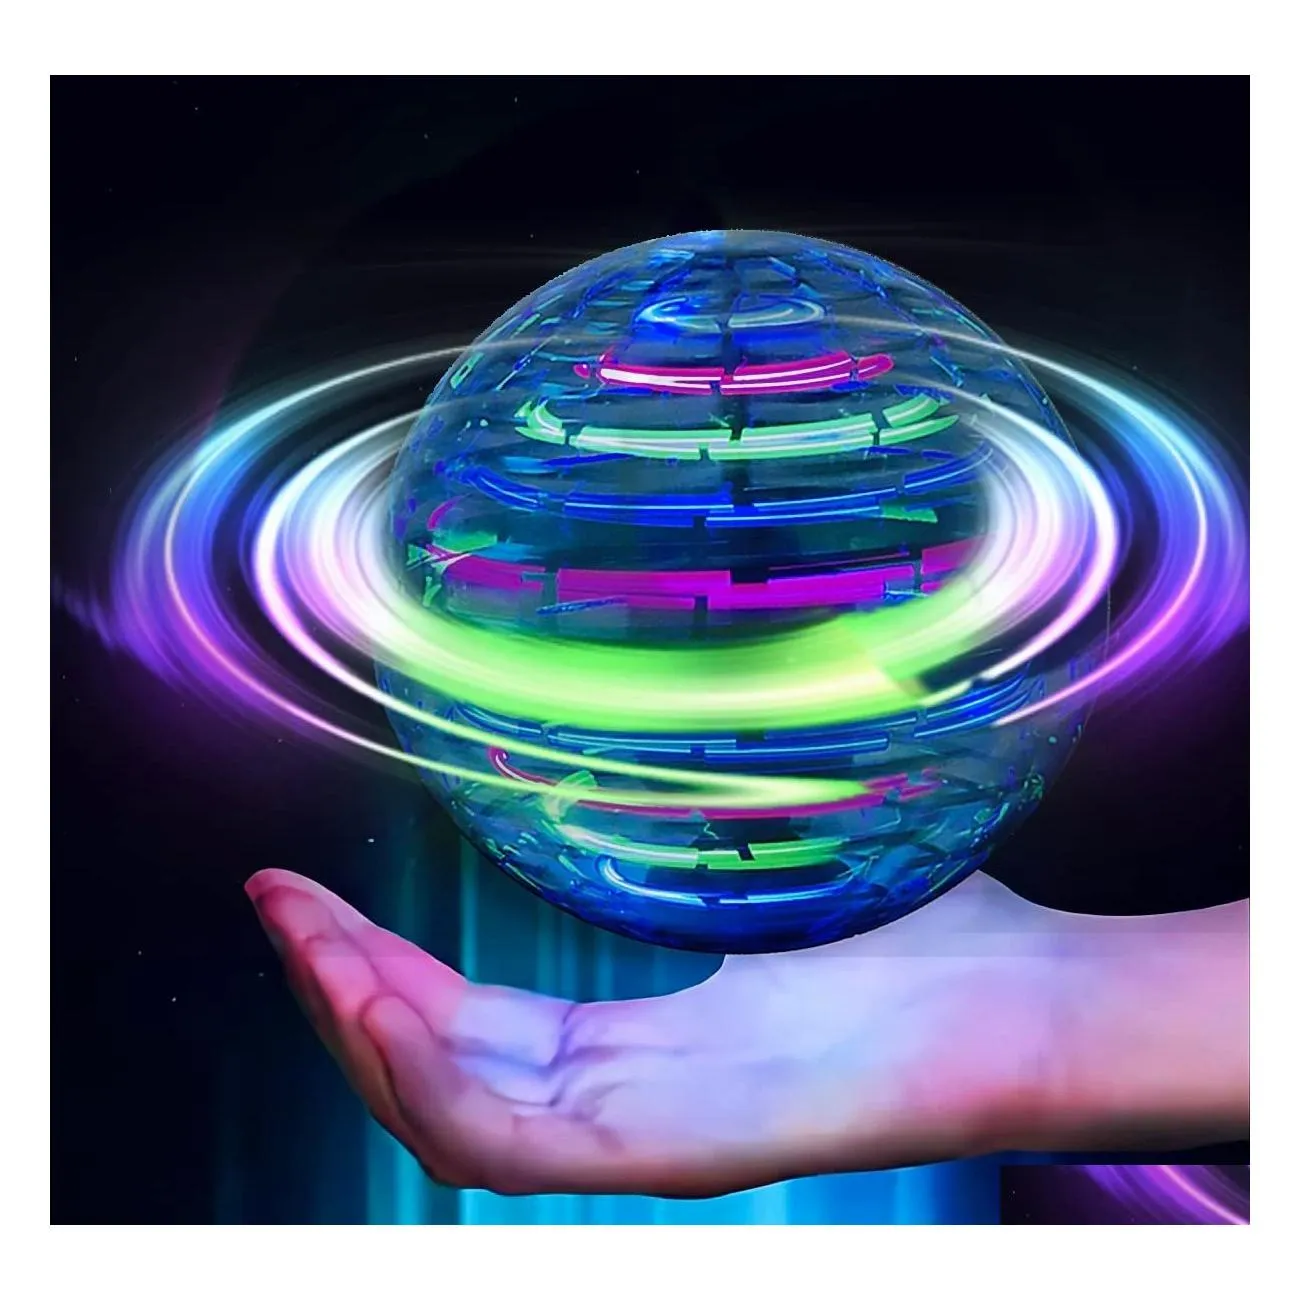 ماجيك كرات لعبة كرة طائرة صغيرة بدون طيار جلوب 360 درجة دوارة مدمجة RGB ضوء تحوم سبينر سبينر سبينر سبيس للأطفال Adts داخلي خارجي Dr Dhgva